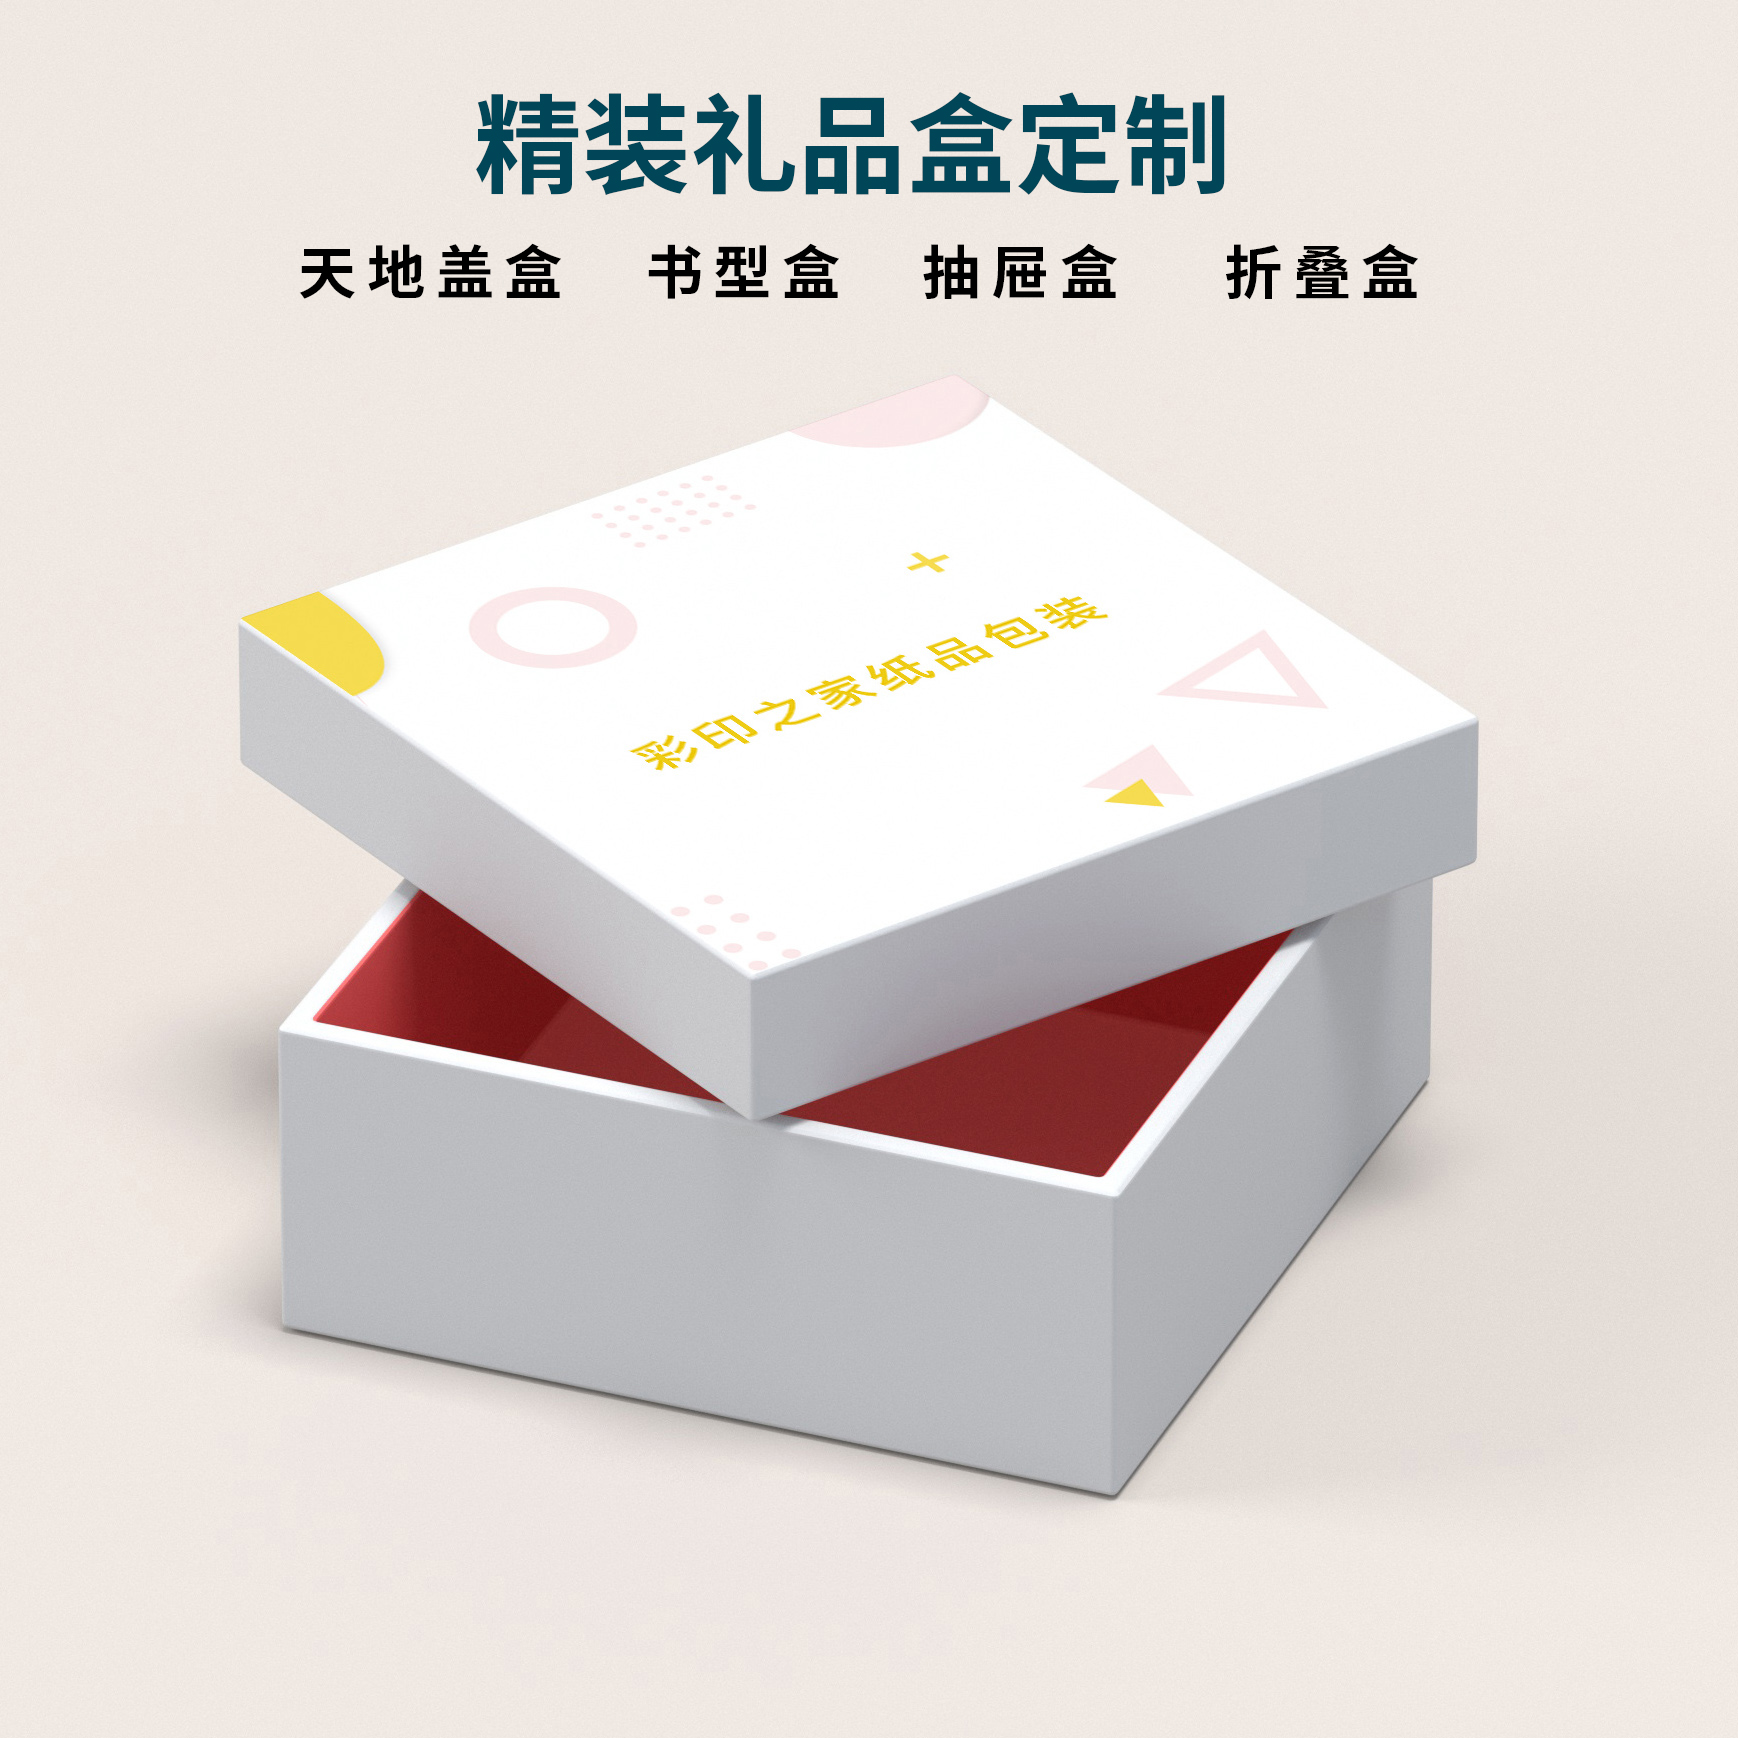 郑州礼品包装盒印刷厂家_郑州纸抽盒印刷_郑州蛋糕盒包装厂家